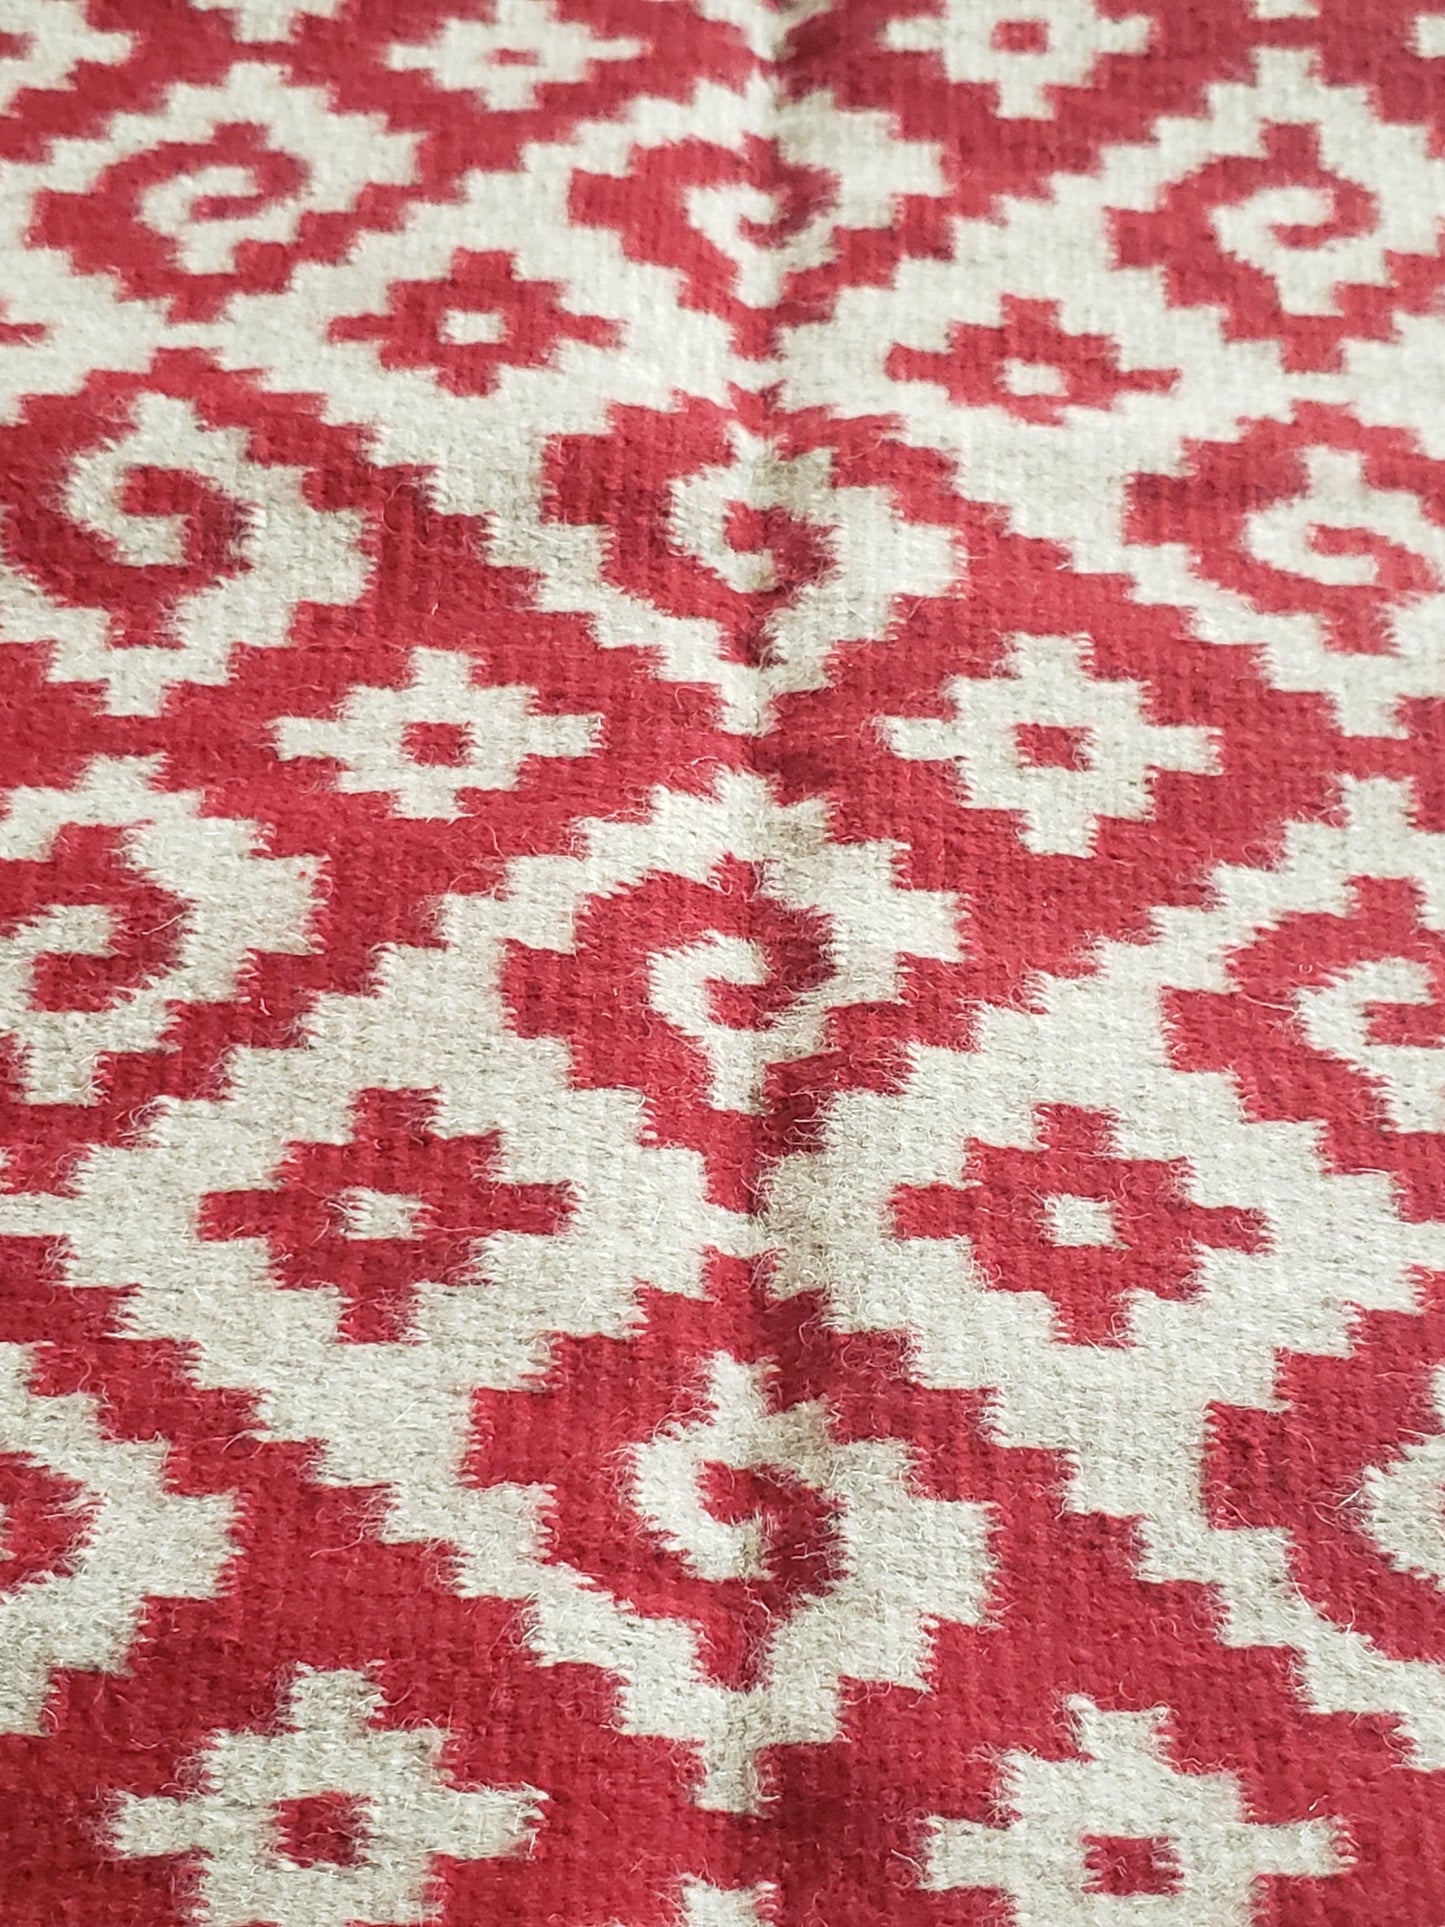 Tapete mexicano, tejido en telar y teñido artesanalmente. Diseño geométrico con grecas color rojo, tinte natural de grana cochinilla.